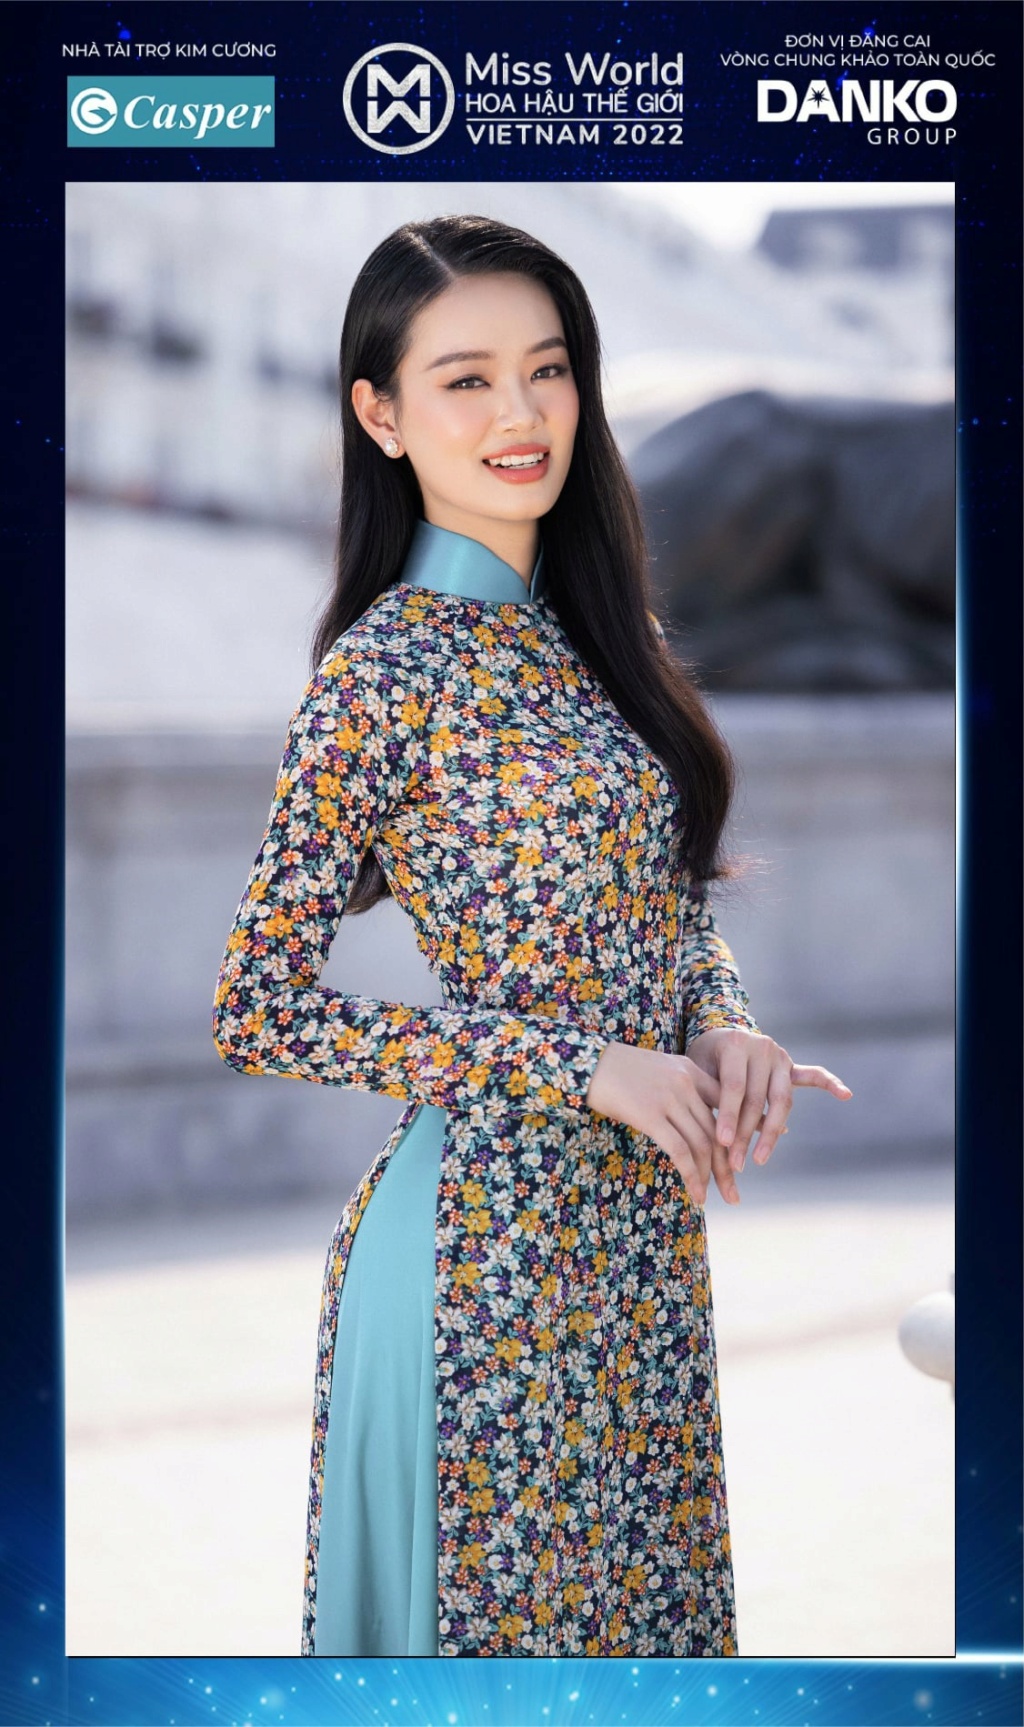 Miss World Vietnam 2022 27911311